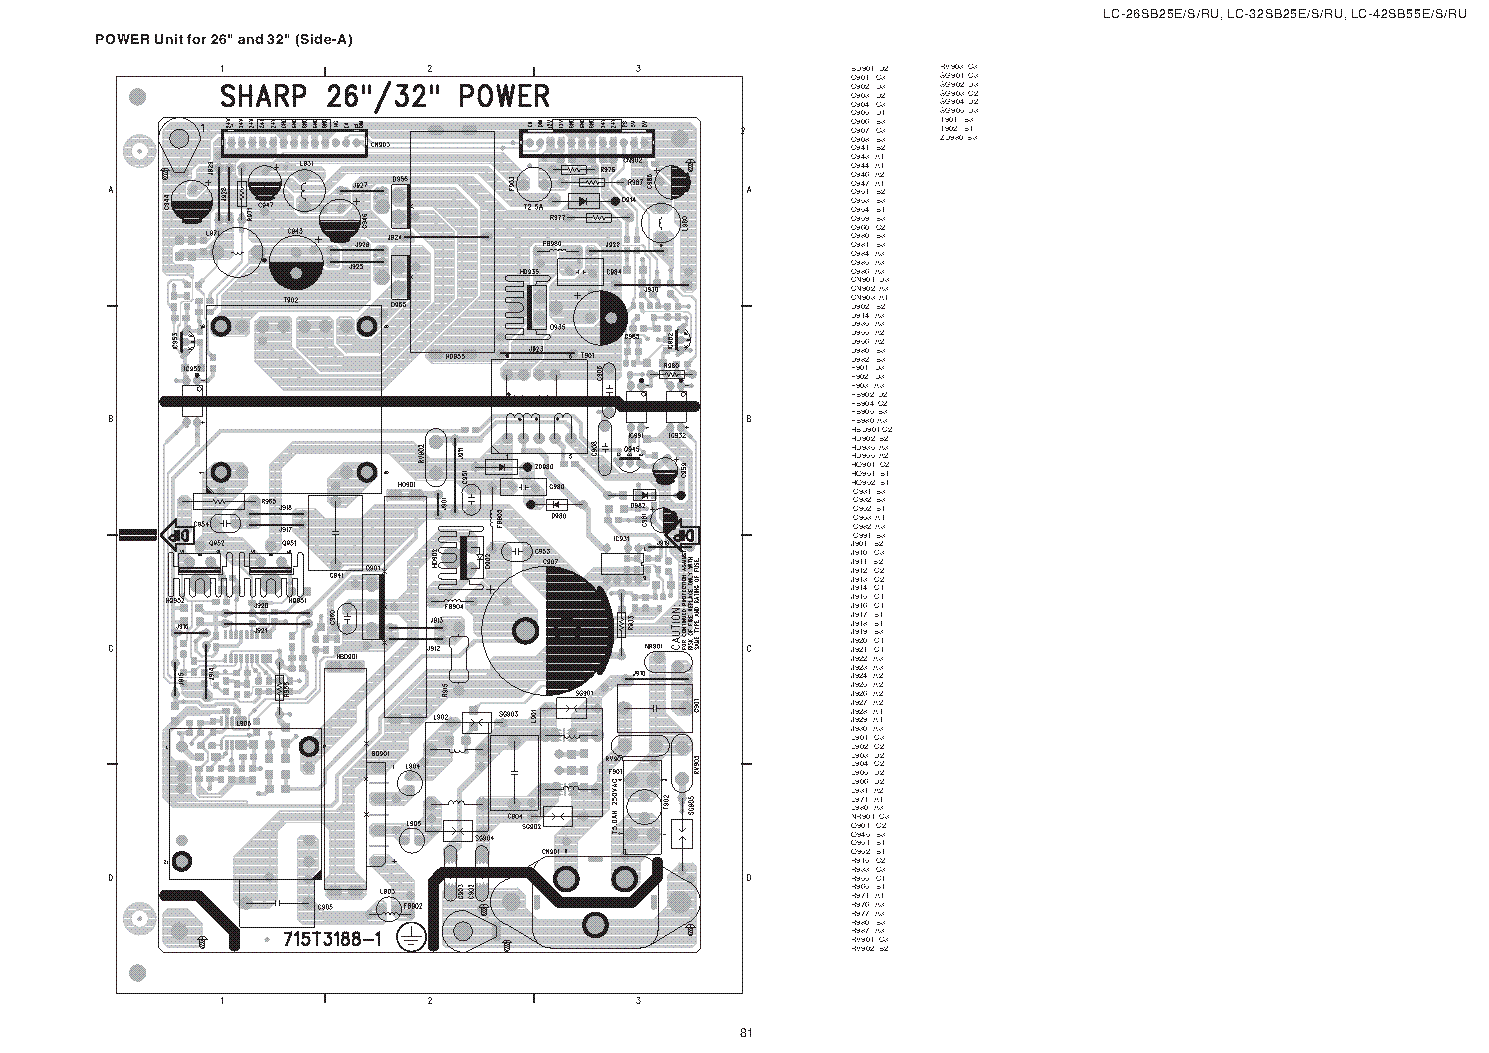 SHARP 715T3188-1 9JR9900000005 ADTV82420PA3 PSU service manual (1st page)